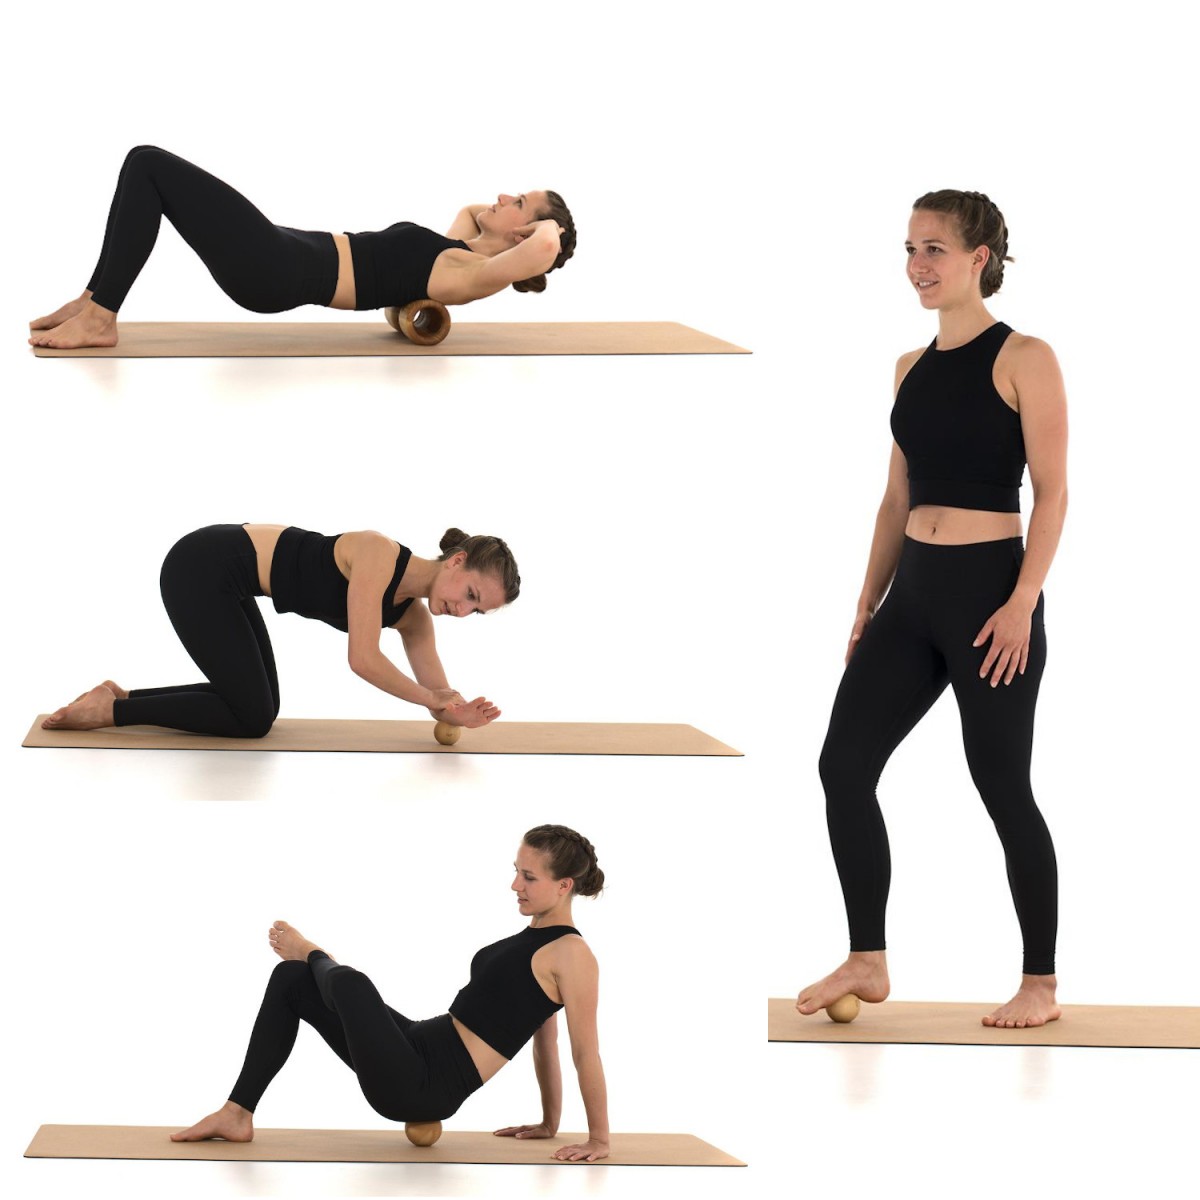 rollholz – Balanceboard & Faszienset zum Training für Gleichgewicht- & Koordinationsfähigkeit sowie Behandlung von beanspruchten Muskelgewebestrukturen (Set klein | Buche)